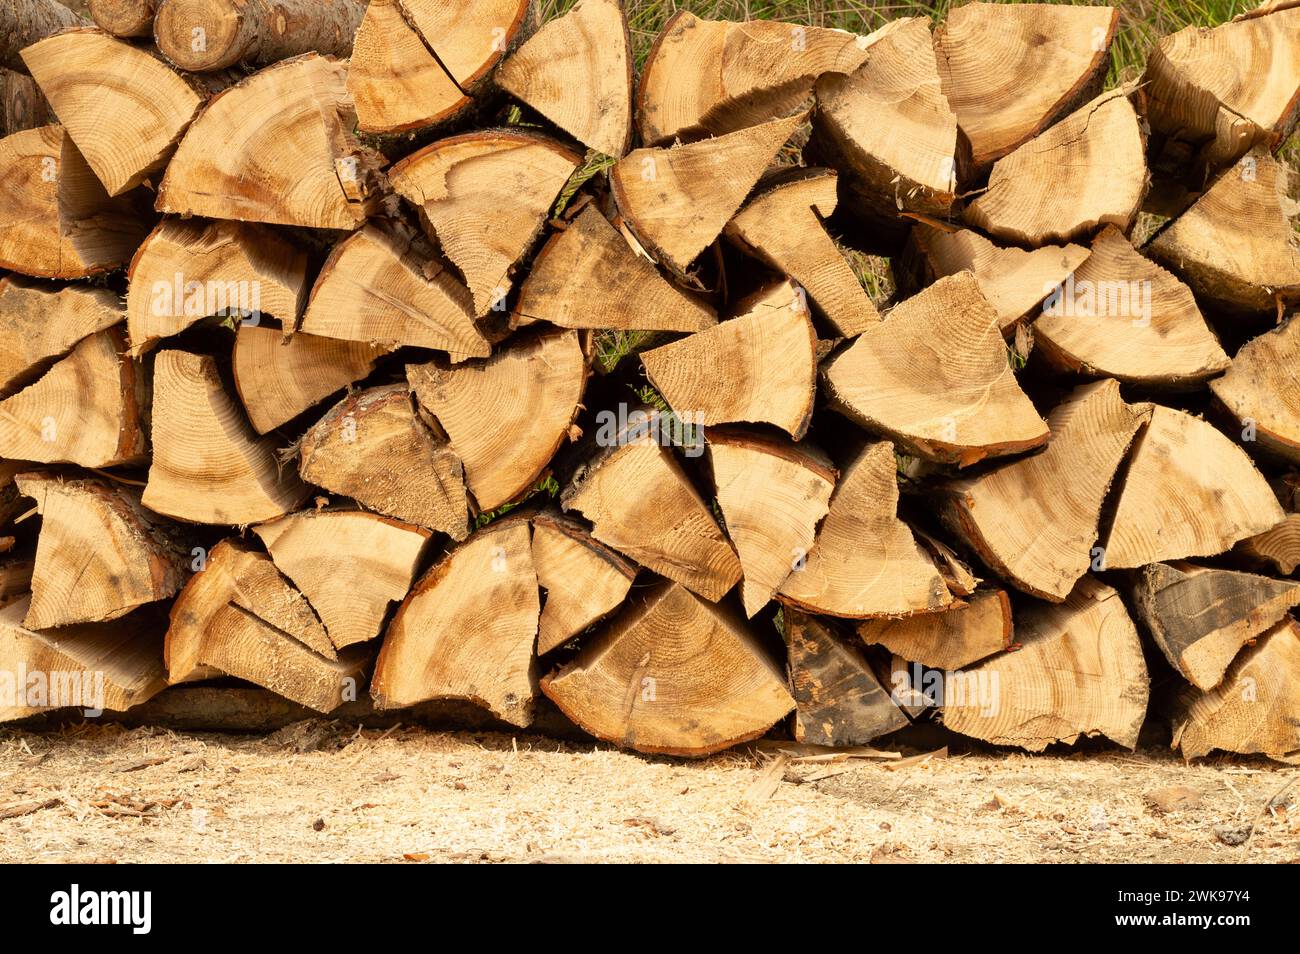 Pila de madera. Troncos de madera recién cortados apilados en el bosque. Leña, daño ambiental, temas ecológicos, deforestación, energía alternativa, lubbe Foto de stock